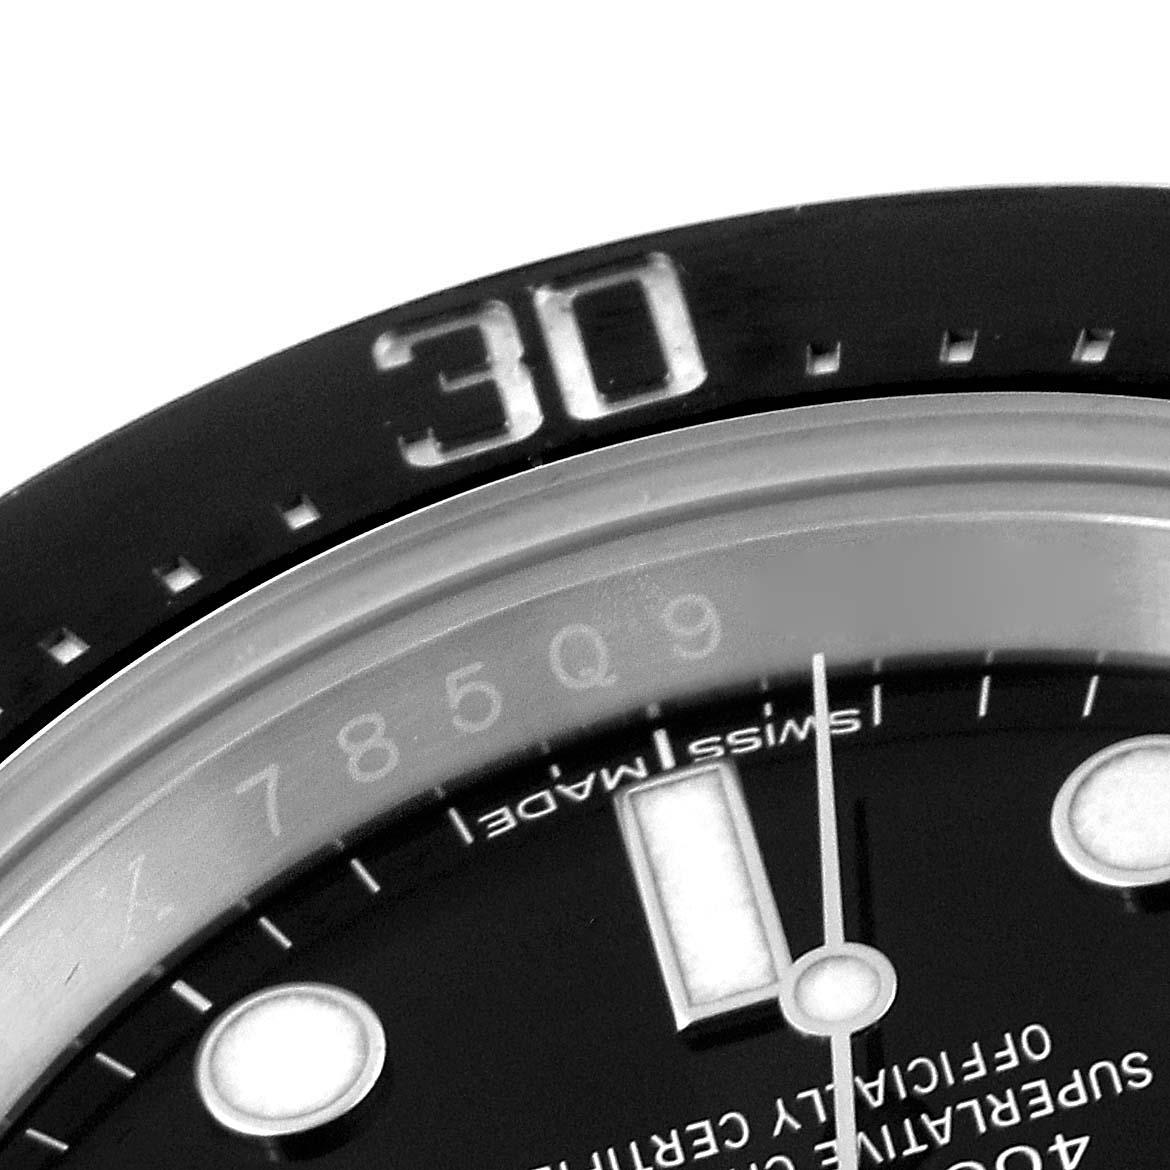 Rolex Seadweller 43mm 50th Anniversary Steel Herrenuhr 126600 Box Card. Offiziell zertifiziertes Chronometerwerk mit automatischem Aufzug. Austerngehäuse aus Edelstahl mit einem Durchmesser von 43 mm. Rolex Logo auf der Krone. Einseitig drehbare